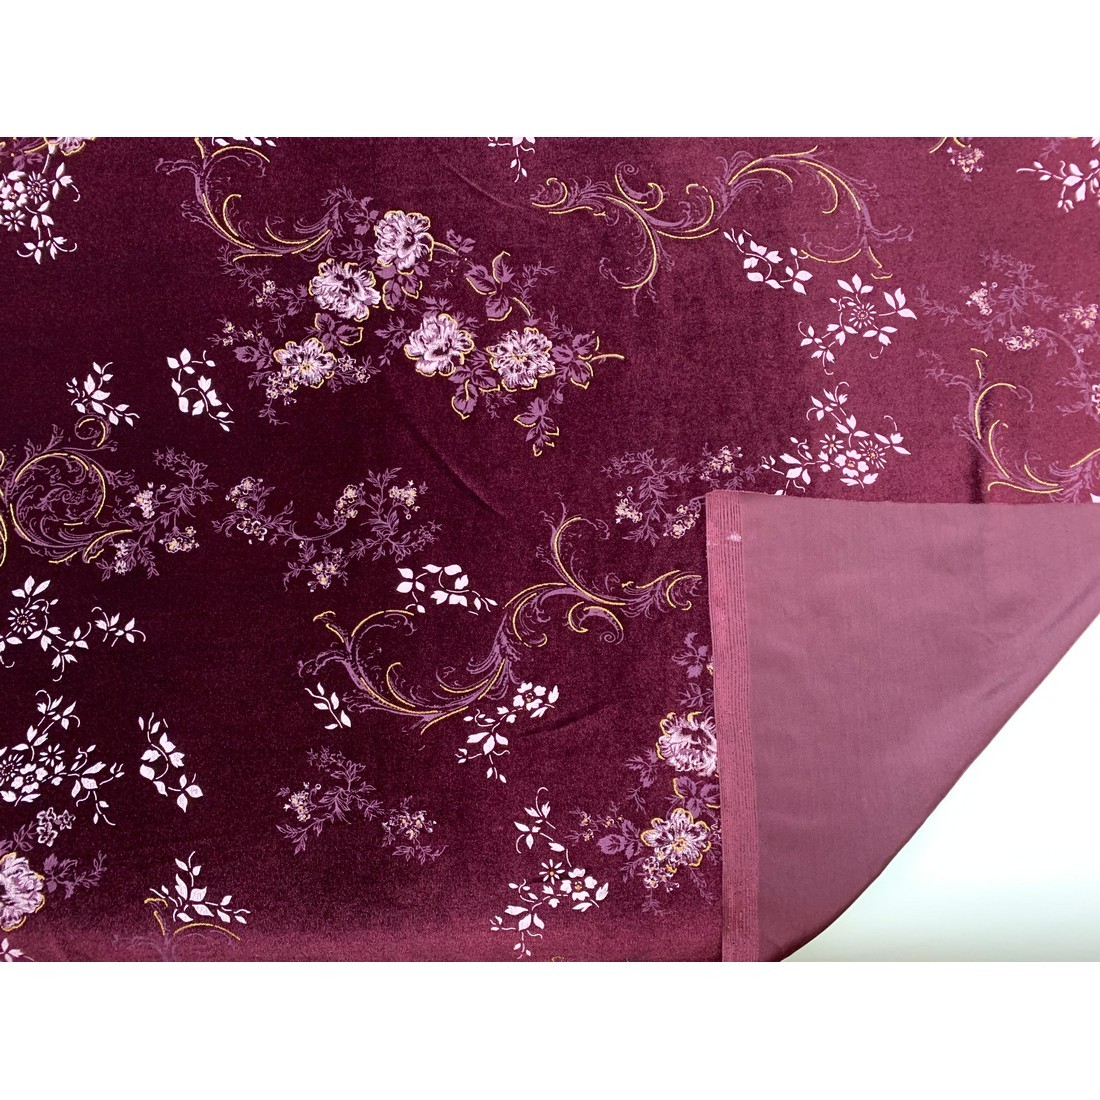 Tessuto velluto bielastico lucido stampato devorè fiori alto 150 cm